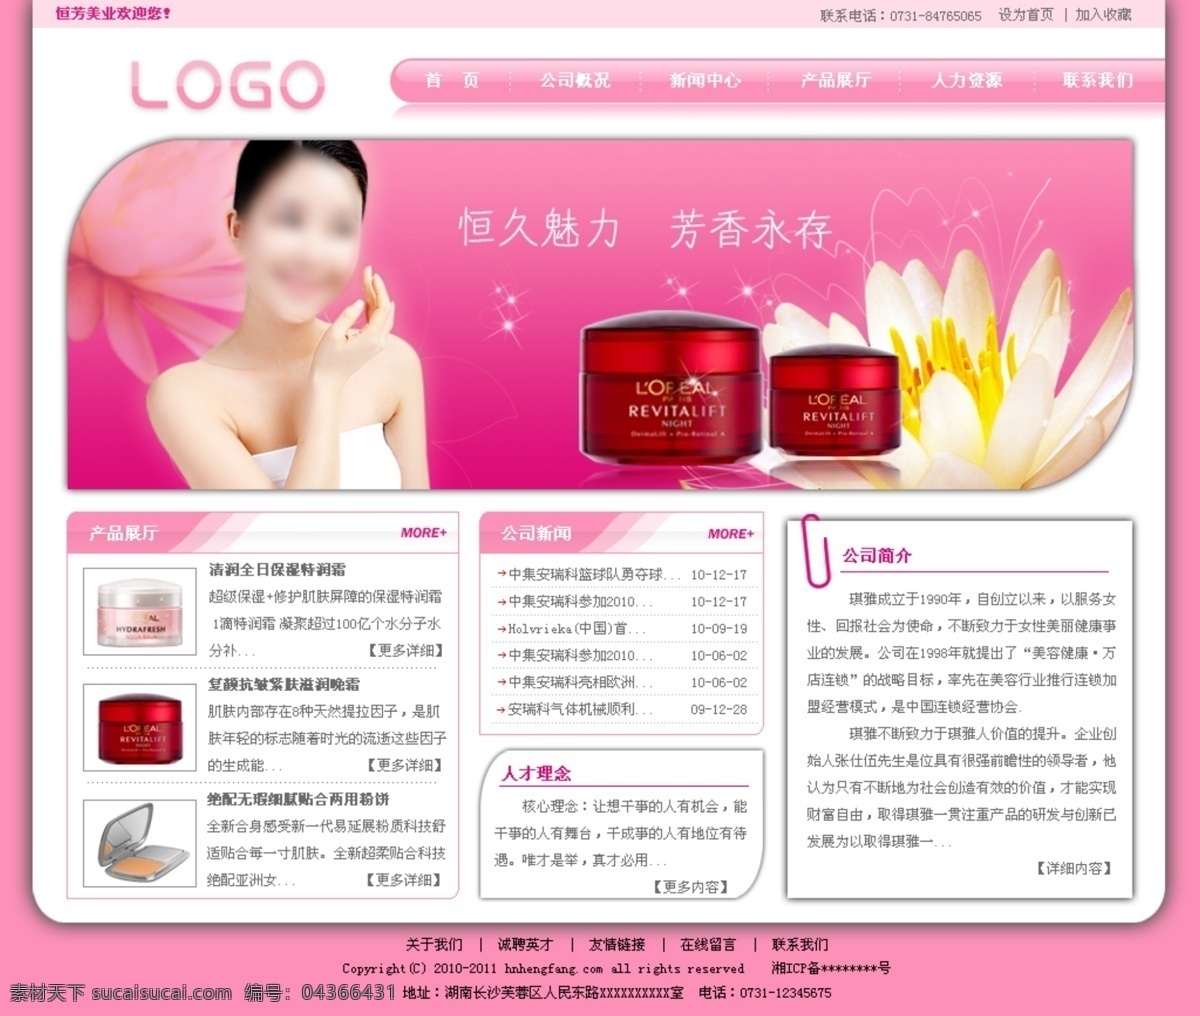 美容 网页 模版 美容产品 网页模板 网页模版 源文件 中文模版 美容网页模版 粉红色模版 中文网页模版 网页素材